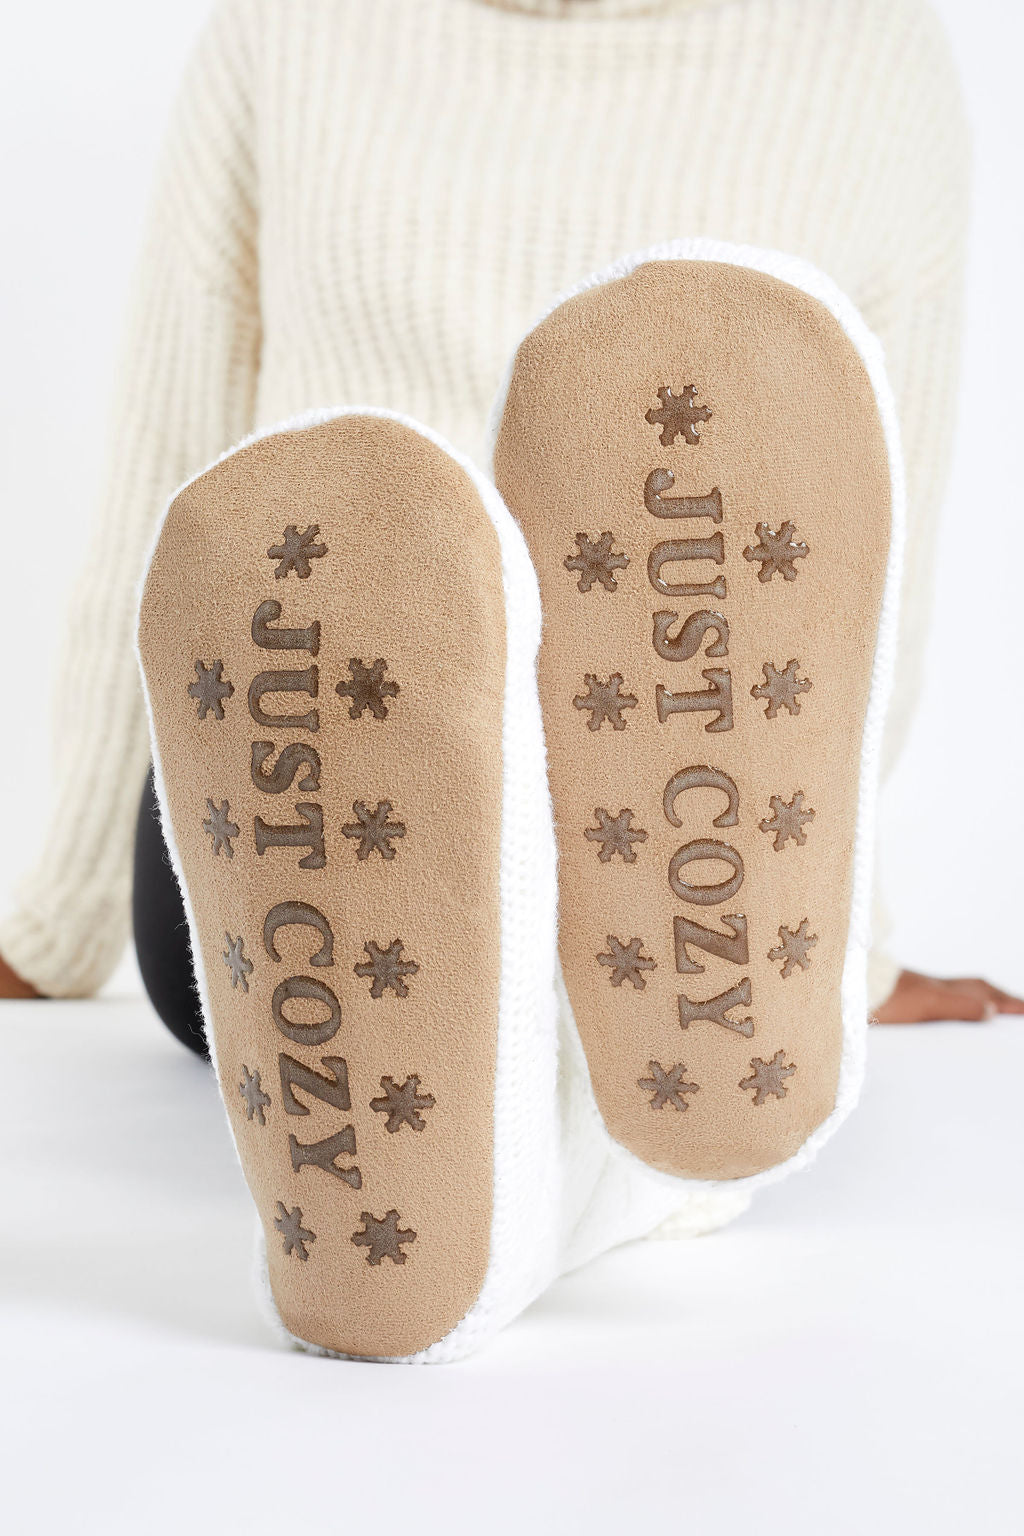 Corgi Stripe Slipper Socks  Fuzzy Socks for Winter - Cute But